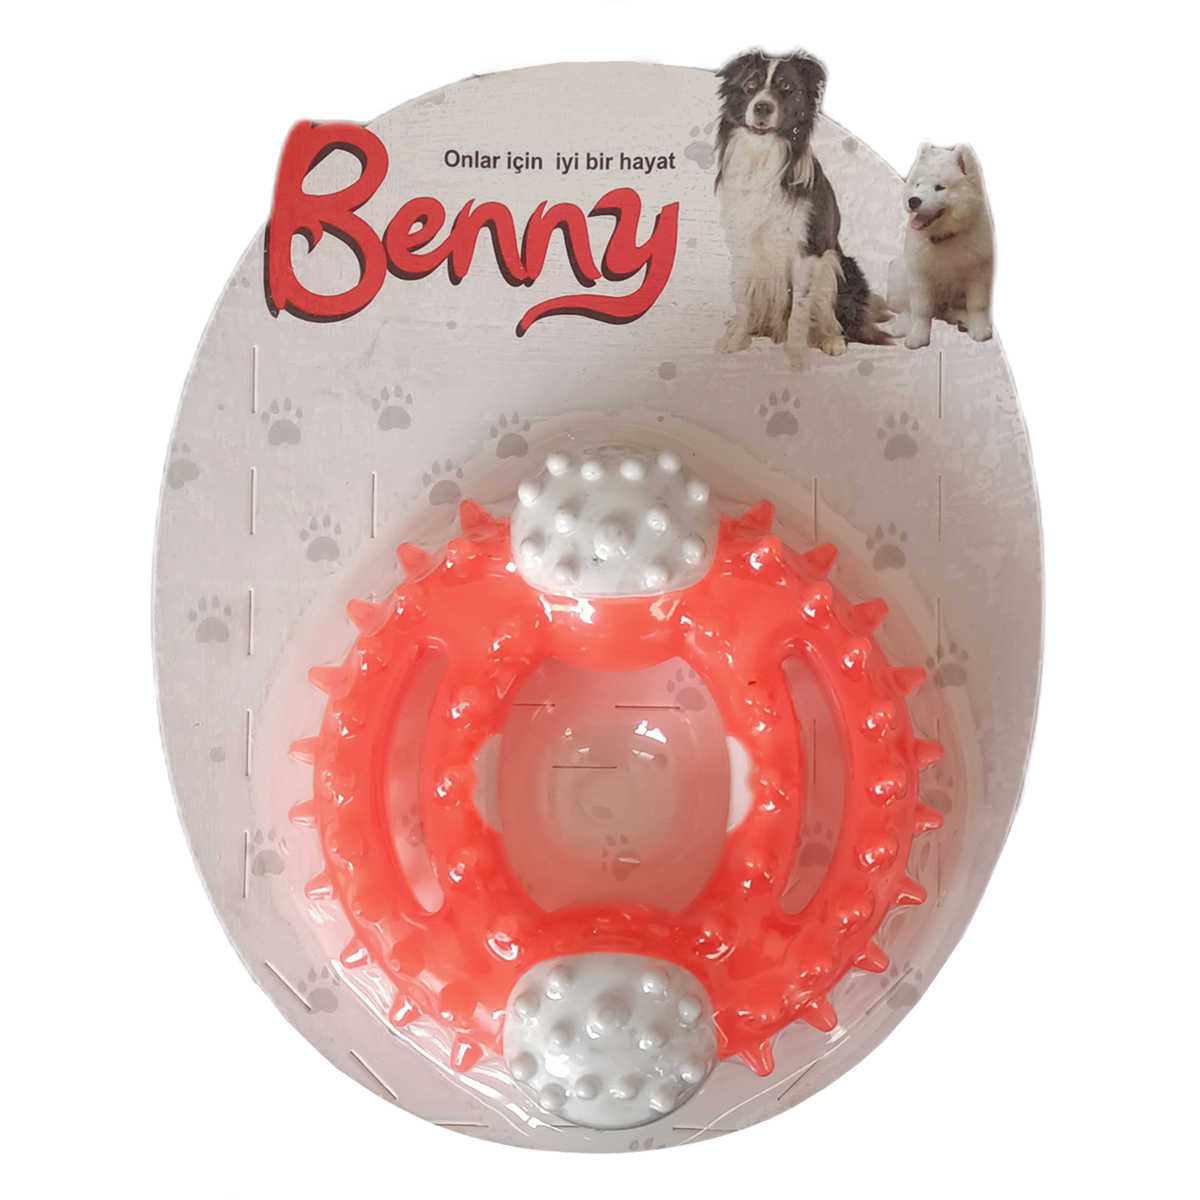 CLZ205 Benny Diş Kaşıma Köpek Oyuncağı Yuvarlak 9,5 cm Turuncu